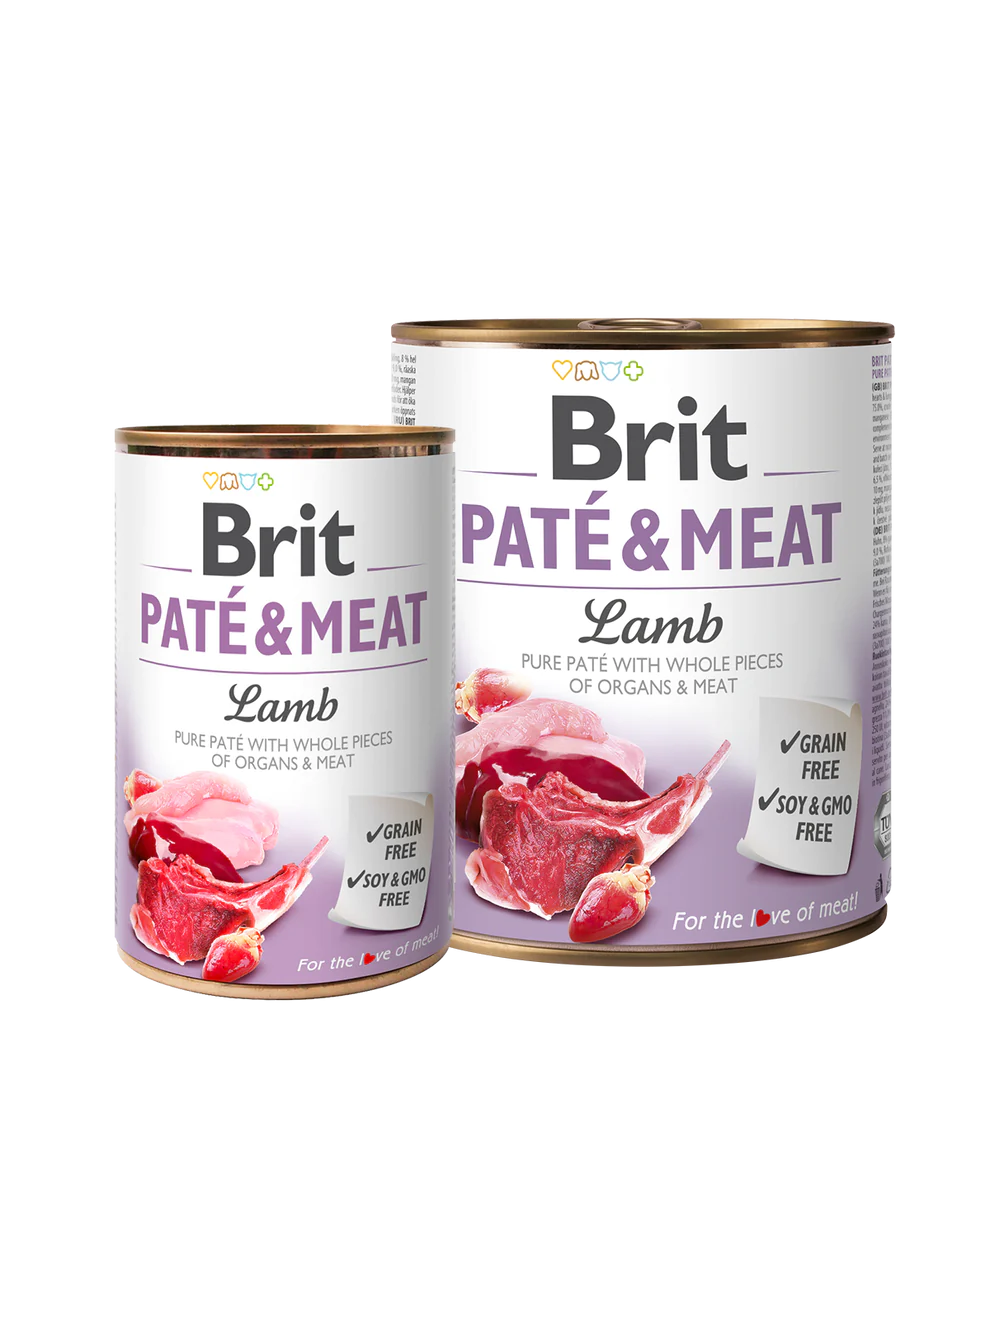 BRIT PATÉ & MEAT LAMB 6 pack of 400g